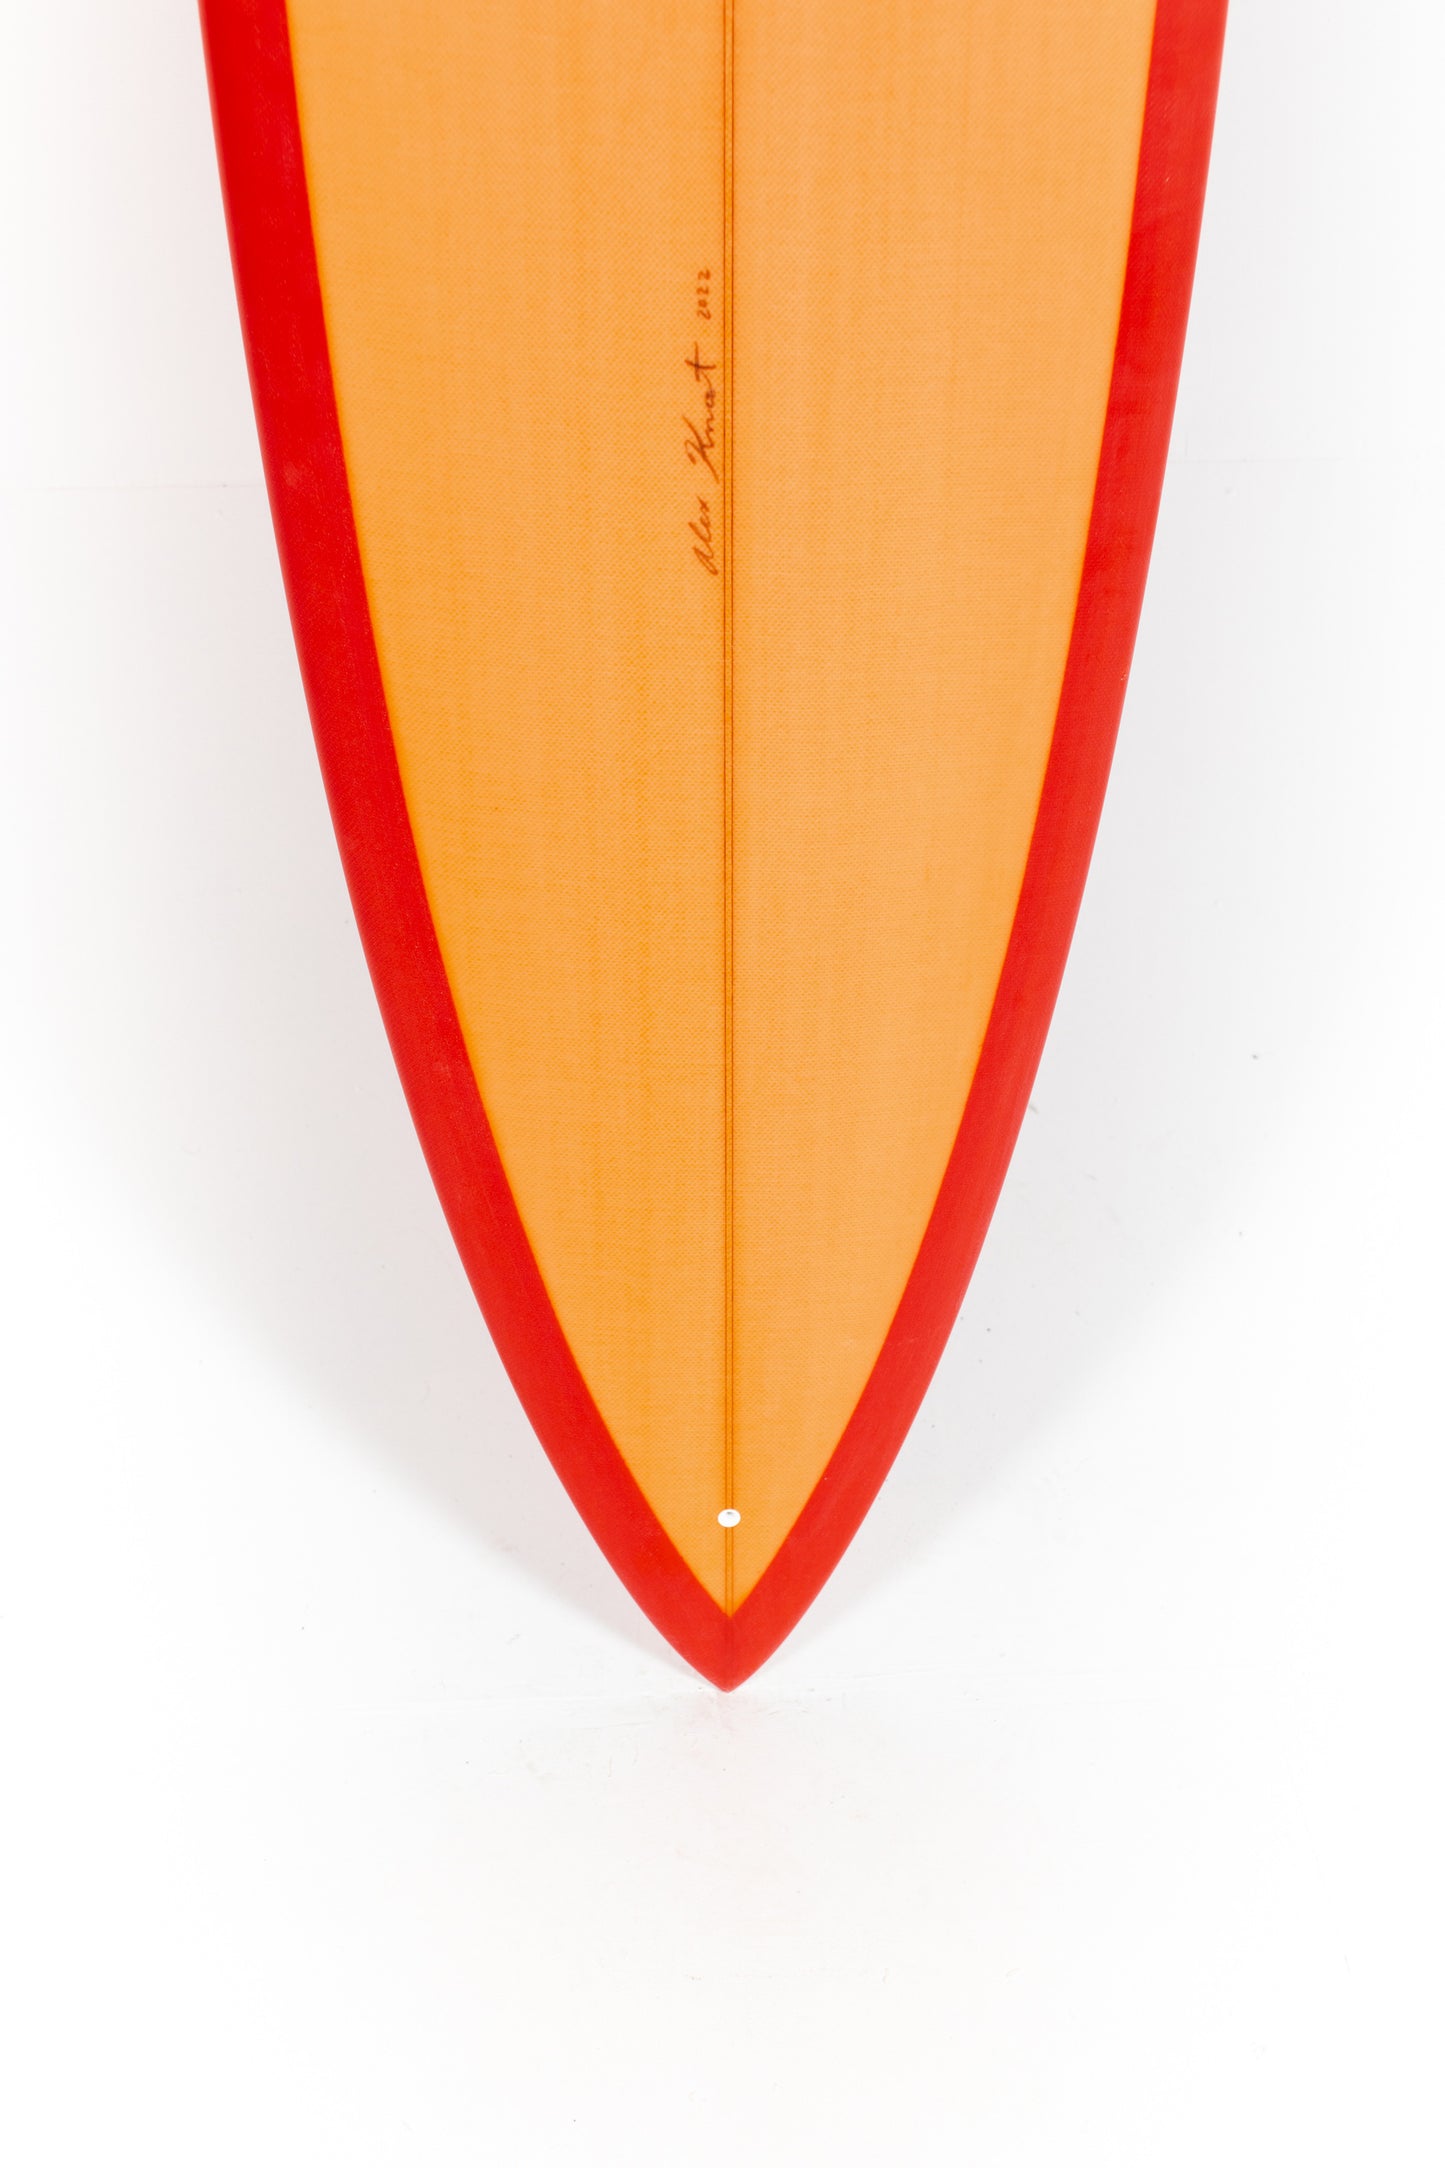 
                  
                    Pukas-Surf-Shop-Alex-Knost-BMT-Disco-Bonzer-6_8_-Orange-Red
                  
                